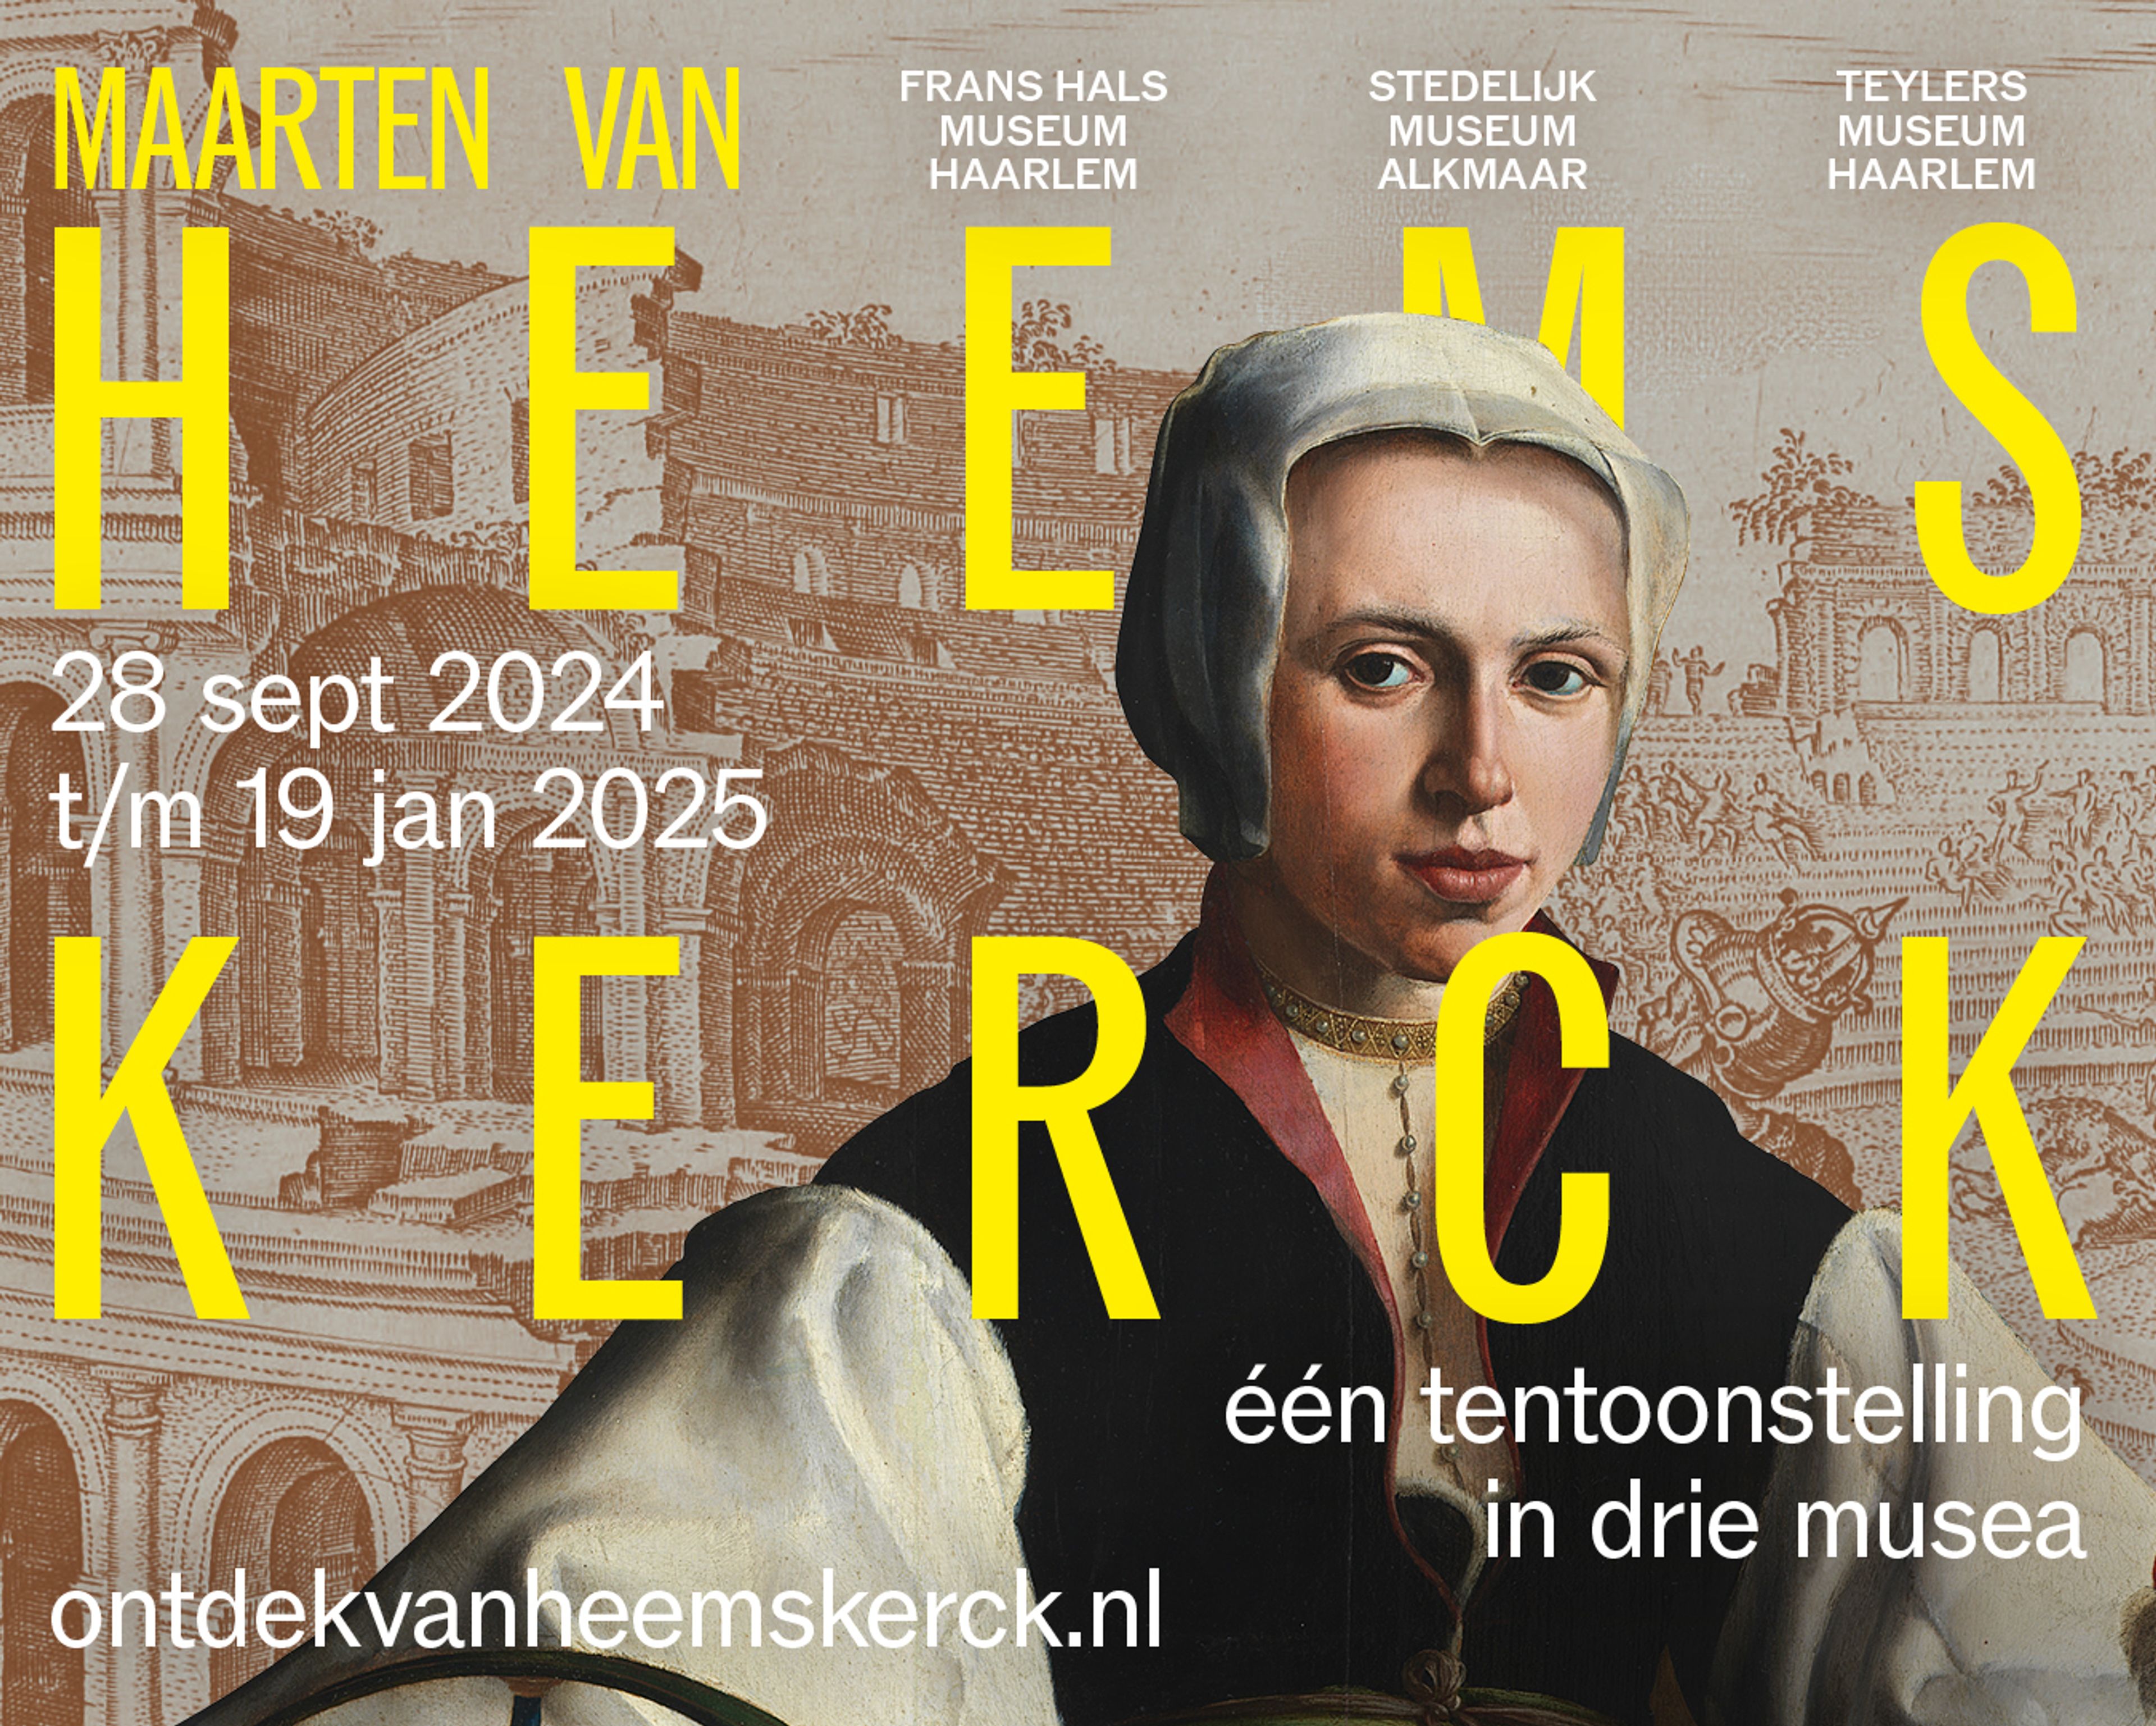 Maarten van Heemskerck exhibition campaign image.